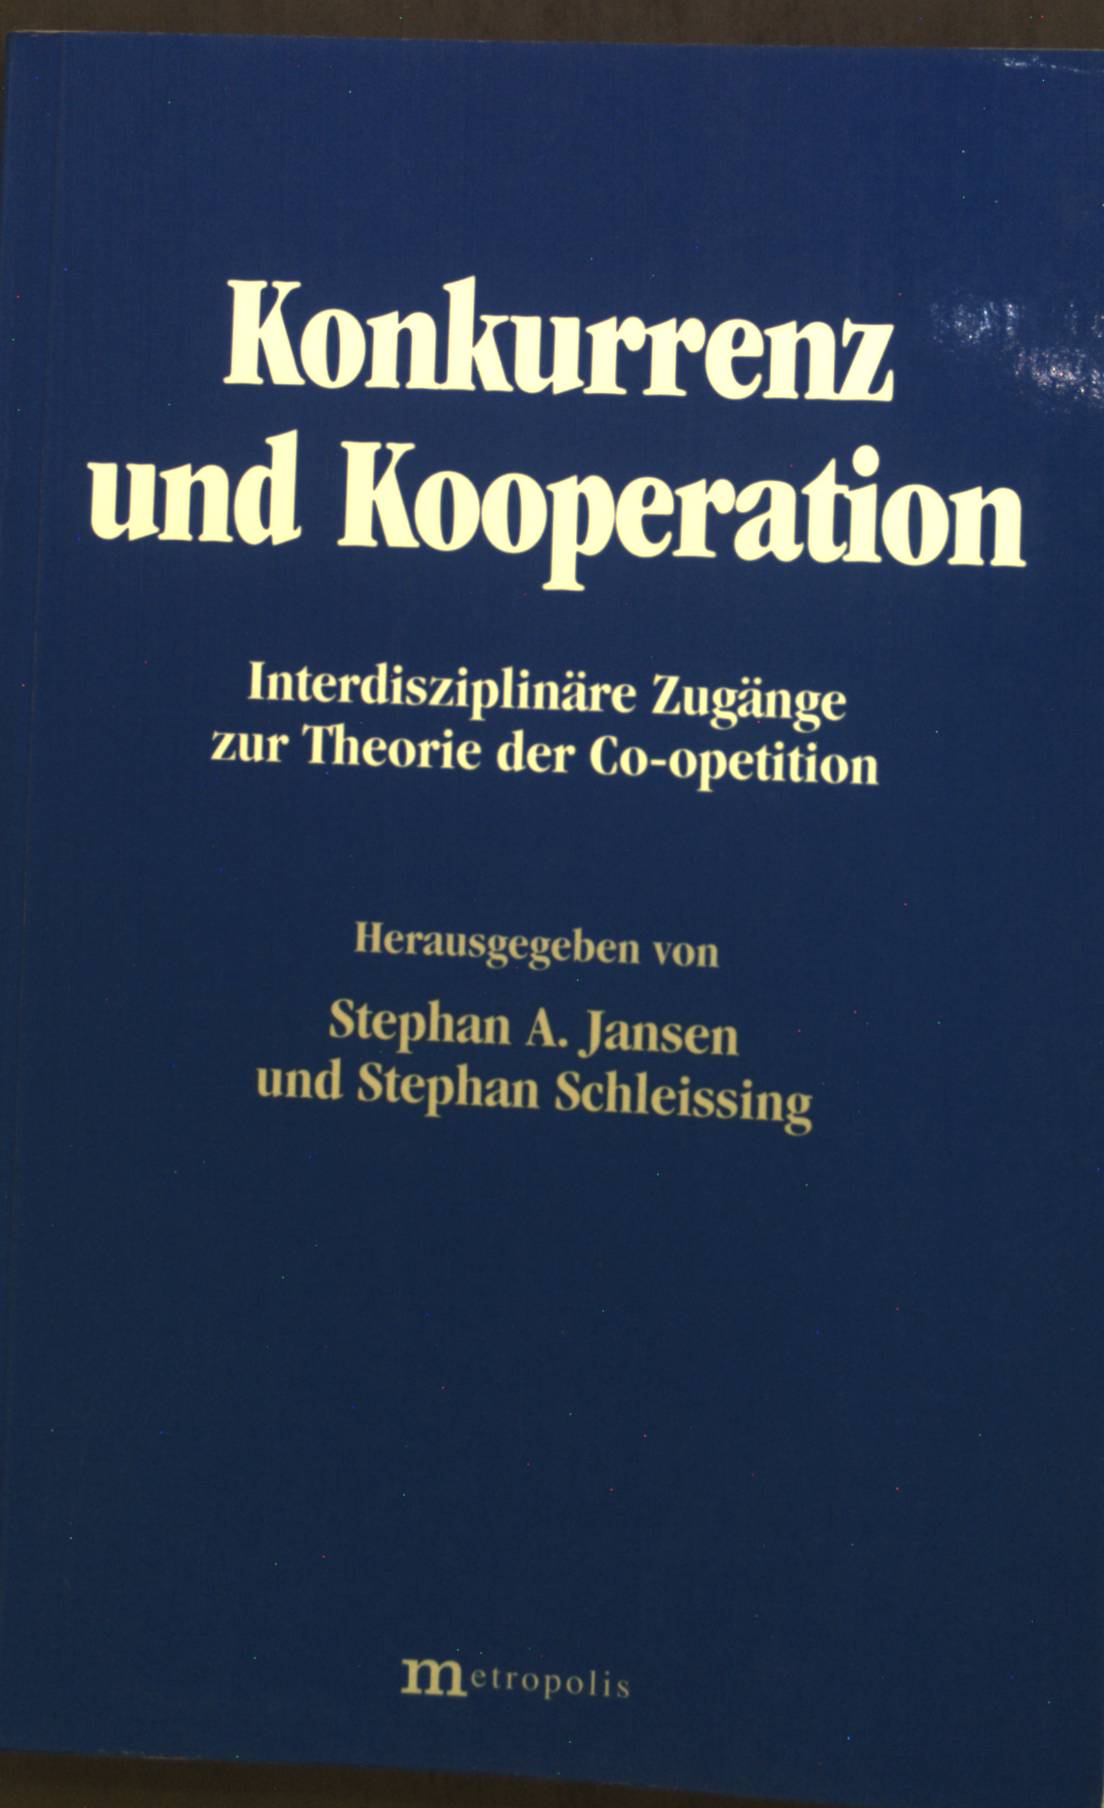 Konkurrenz und Kooperation : Interdisziplinäre Zugänge zur Theorie der Co-opetition. - Jansen, Stephan A und Stephan Schleissing